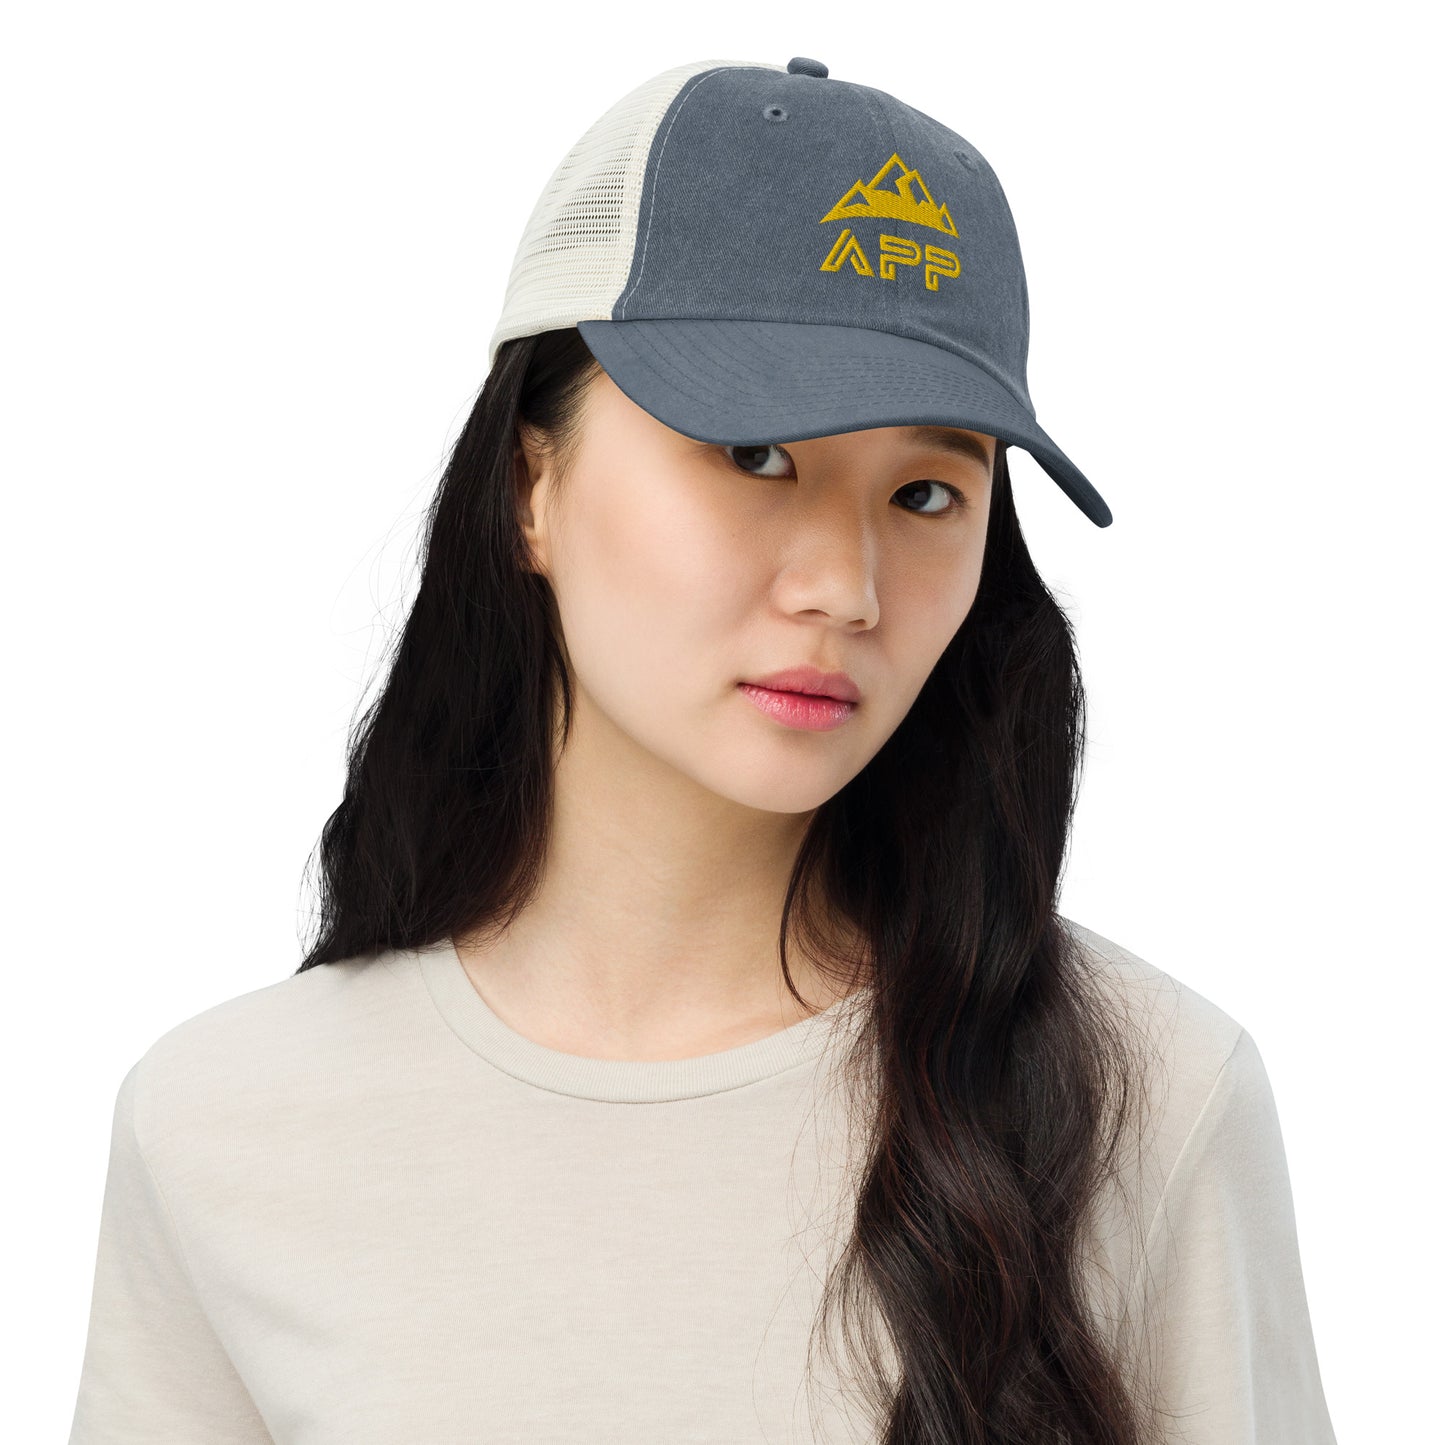 APP Pigment-dyed cap